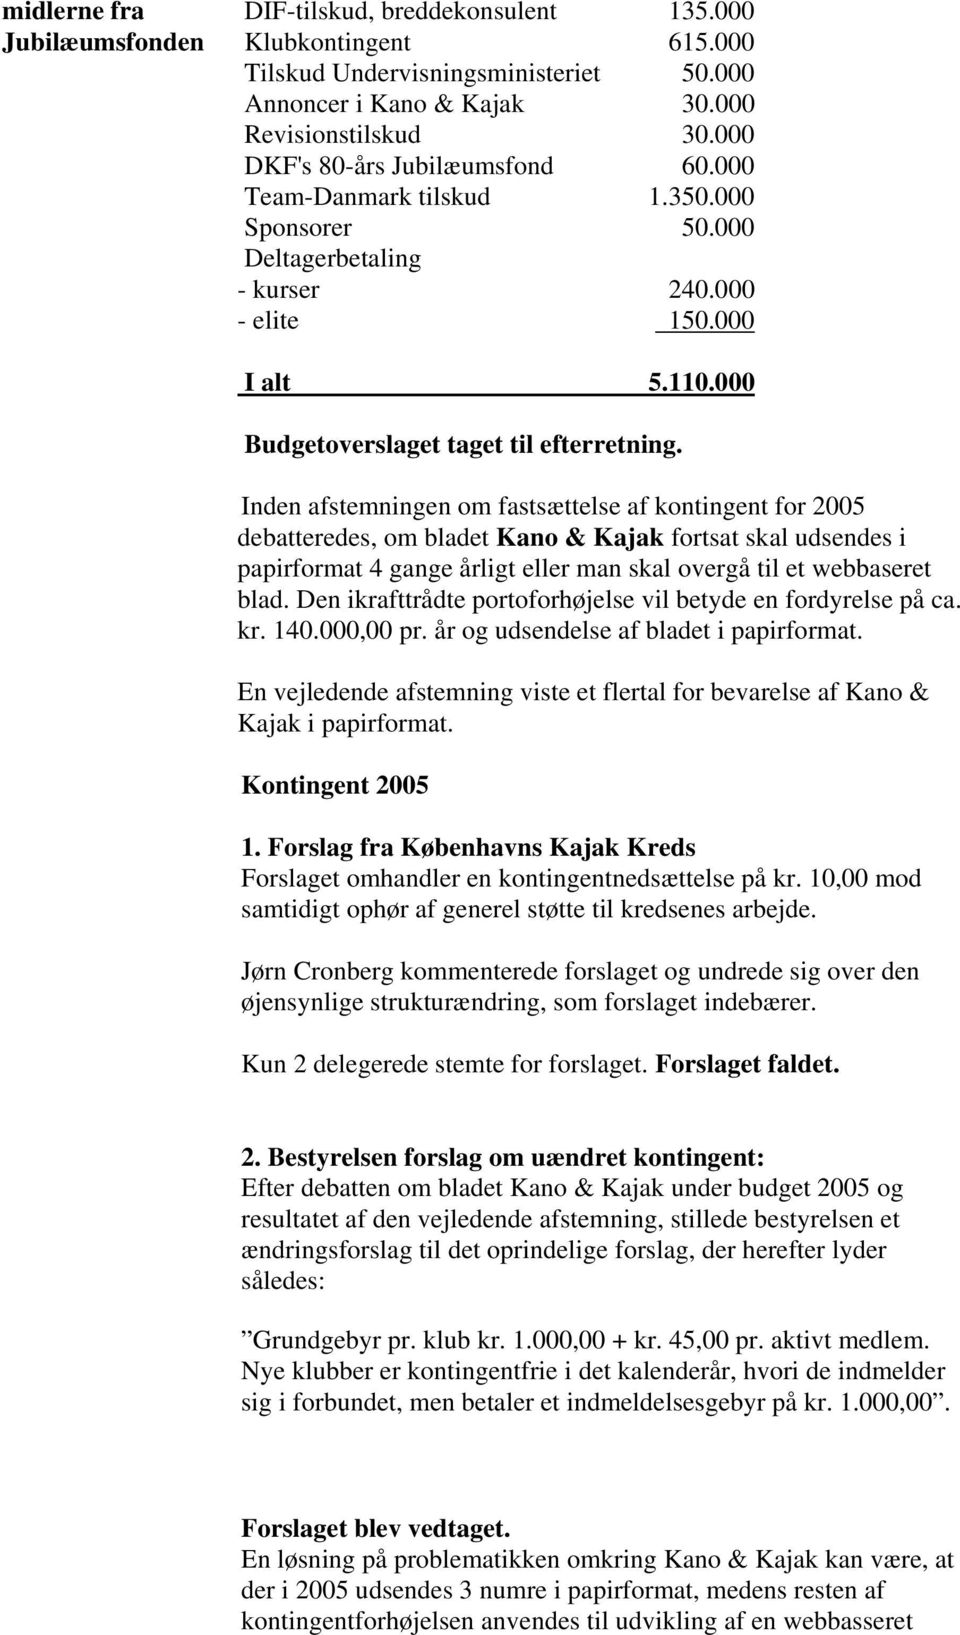 Inden afstemningen om fastsættelse af kontingent for 2005 debatteredes, om bladet Kano & Kajak fortsat skal udsendes i papirformat 4 gange årligt eller man skal overgå til et webbaseret blad.